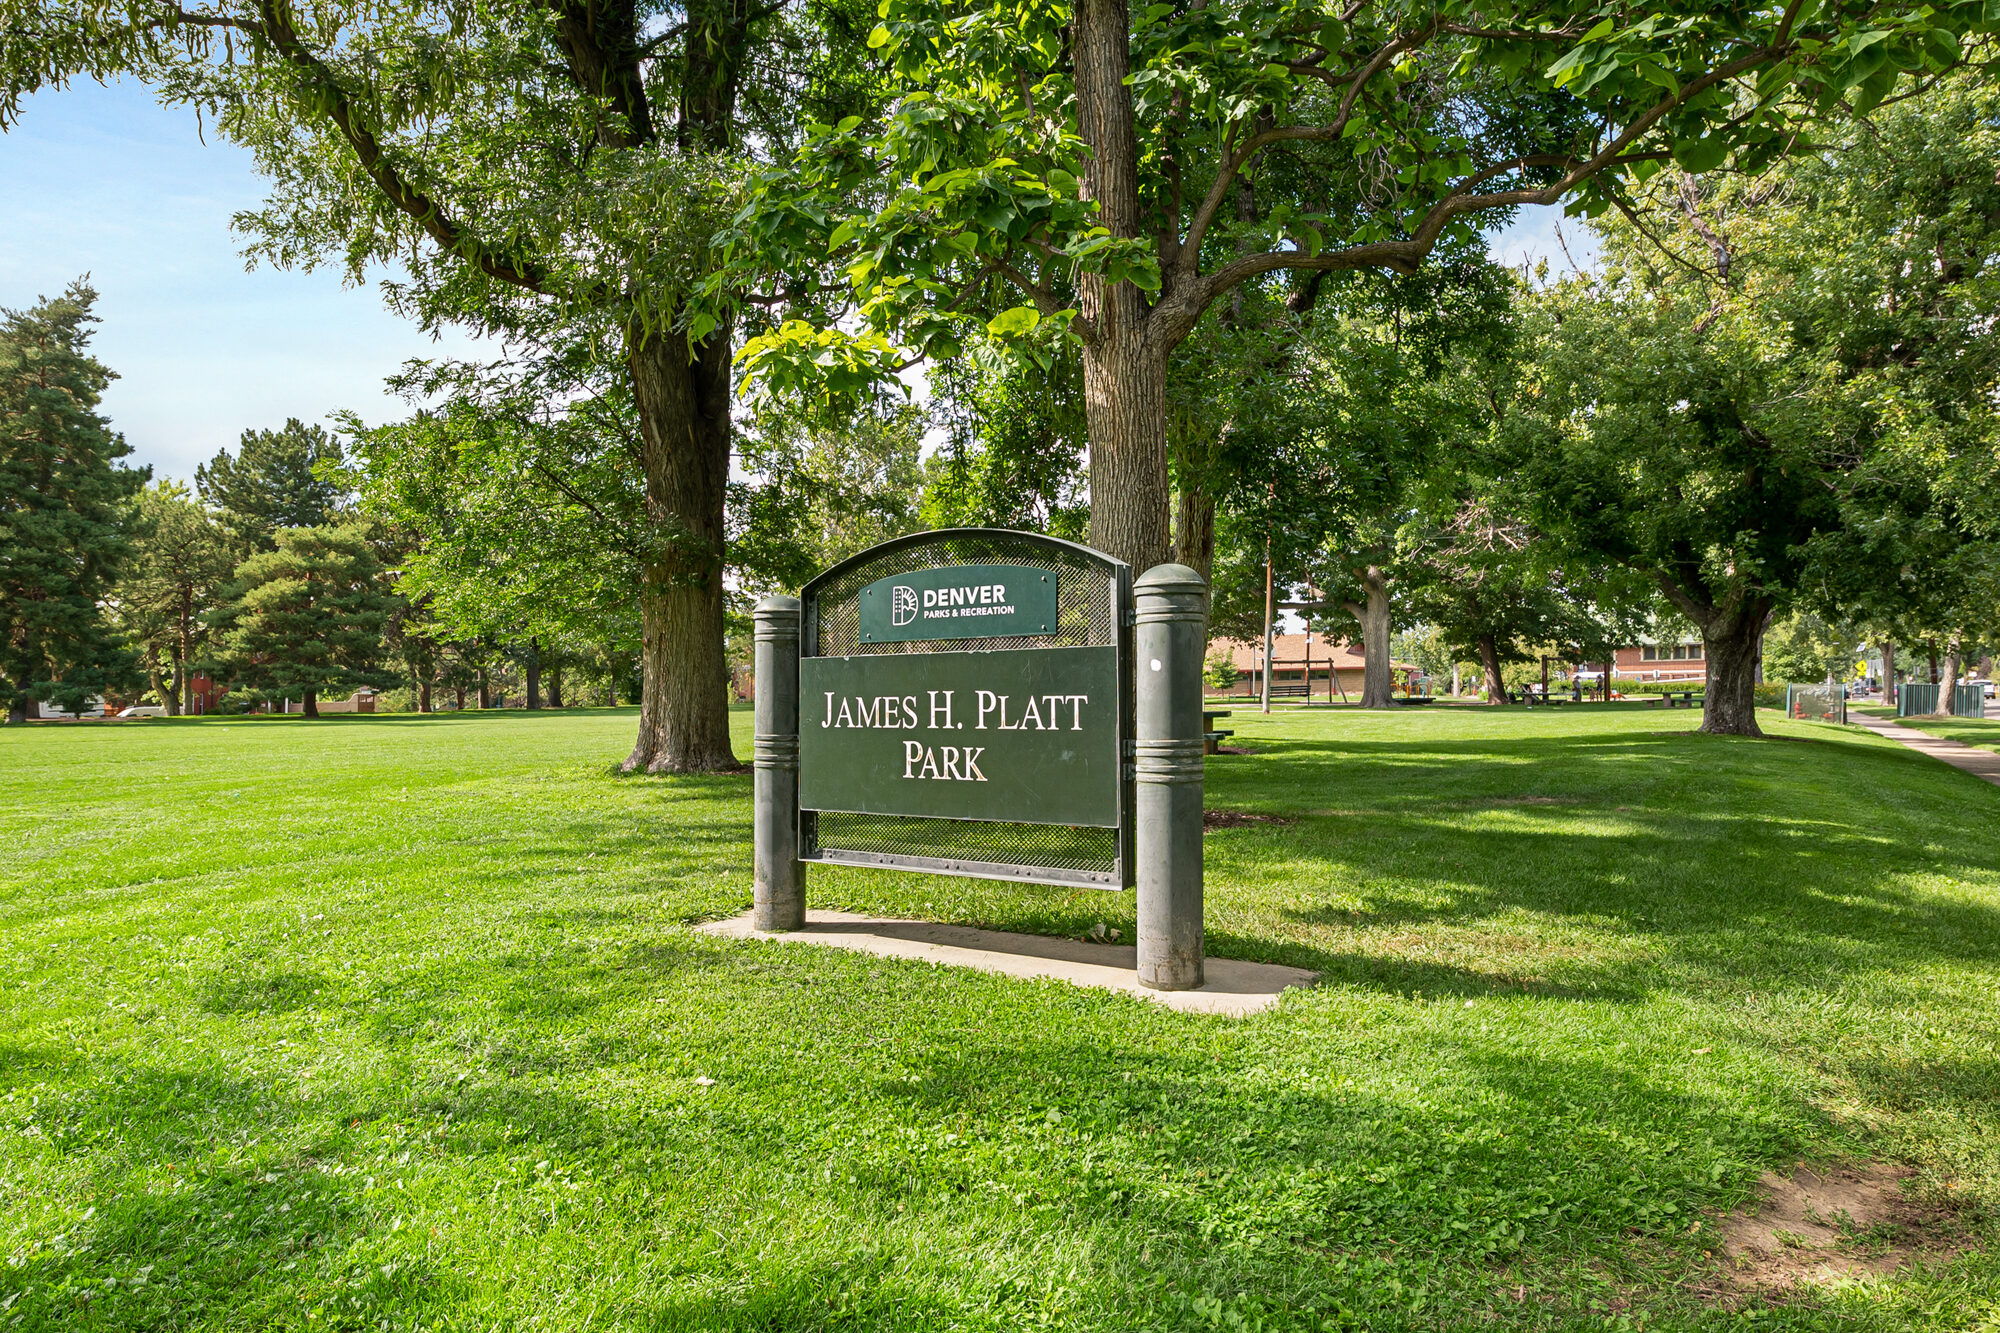 Platt Park